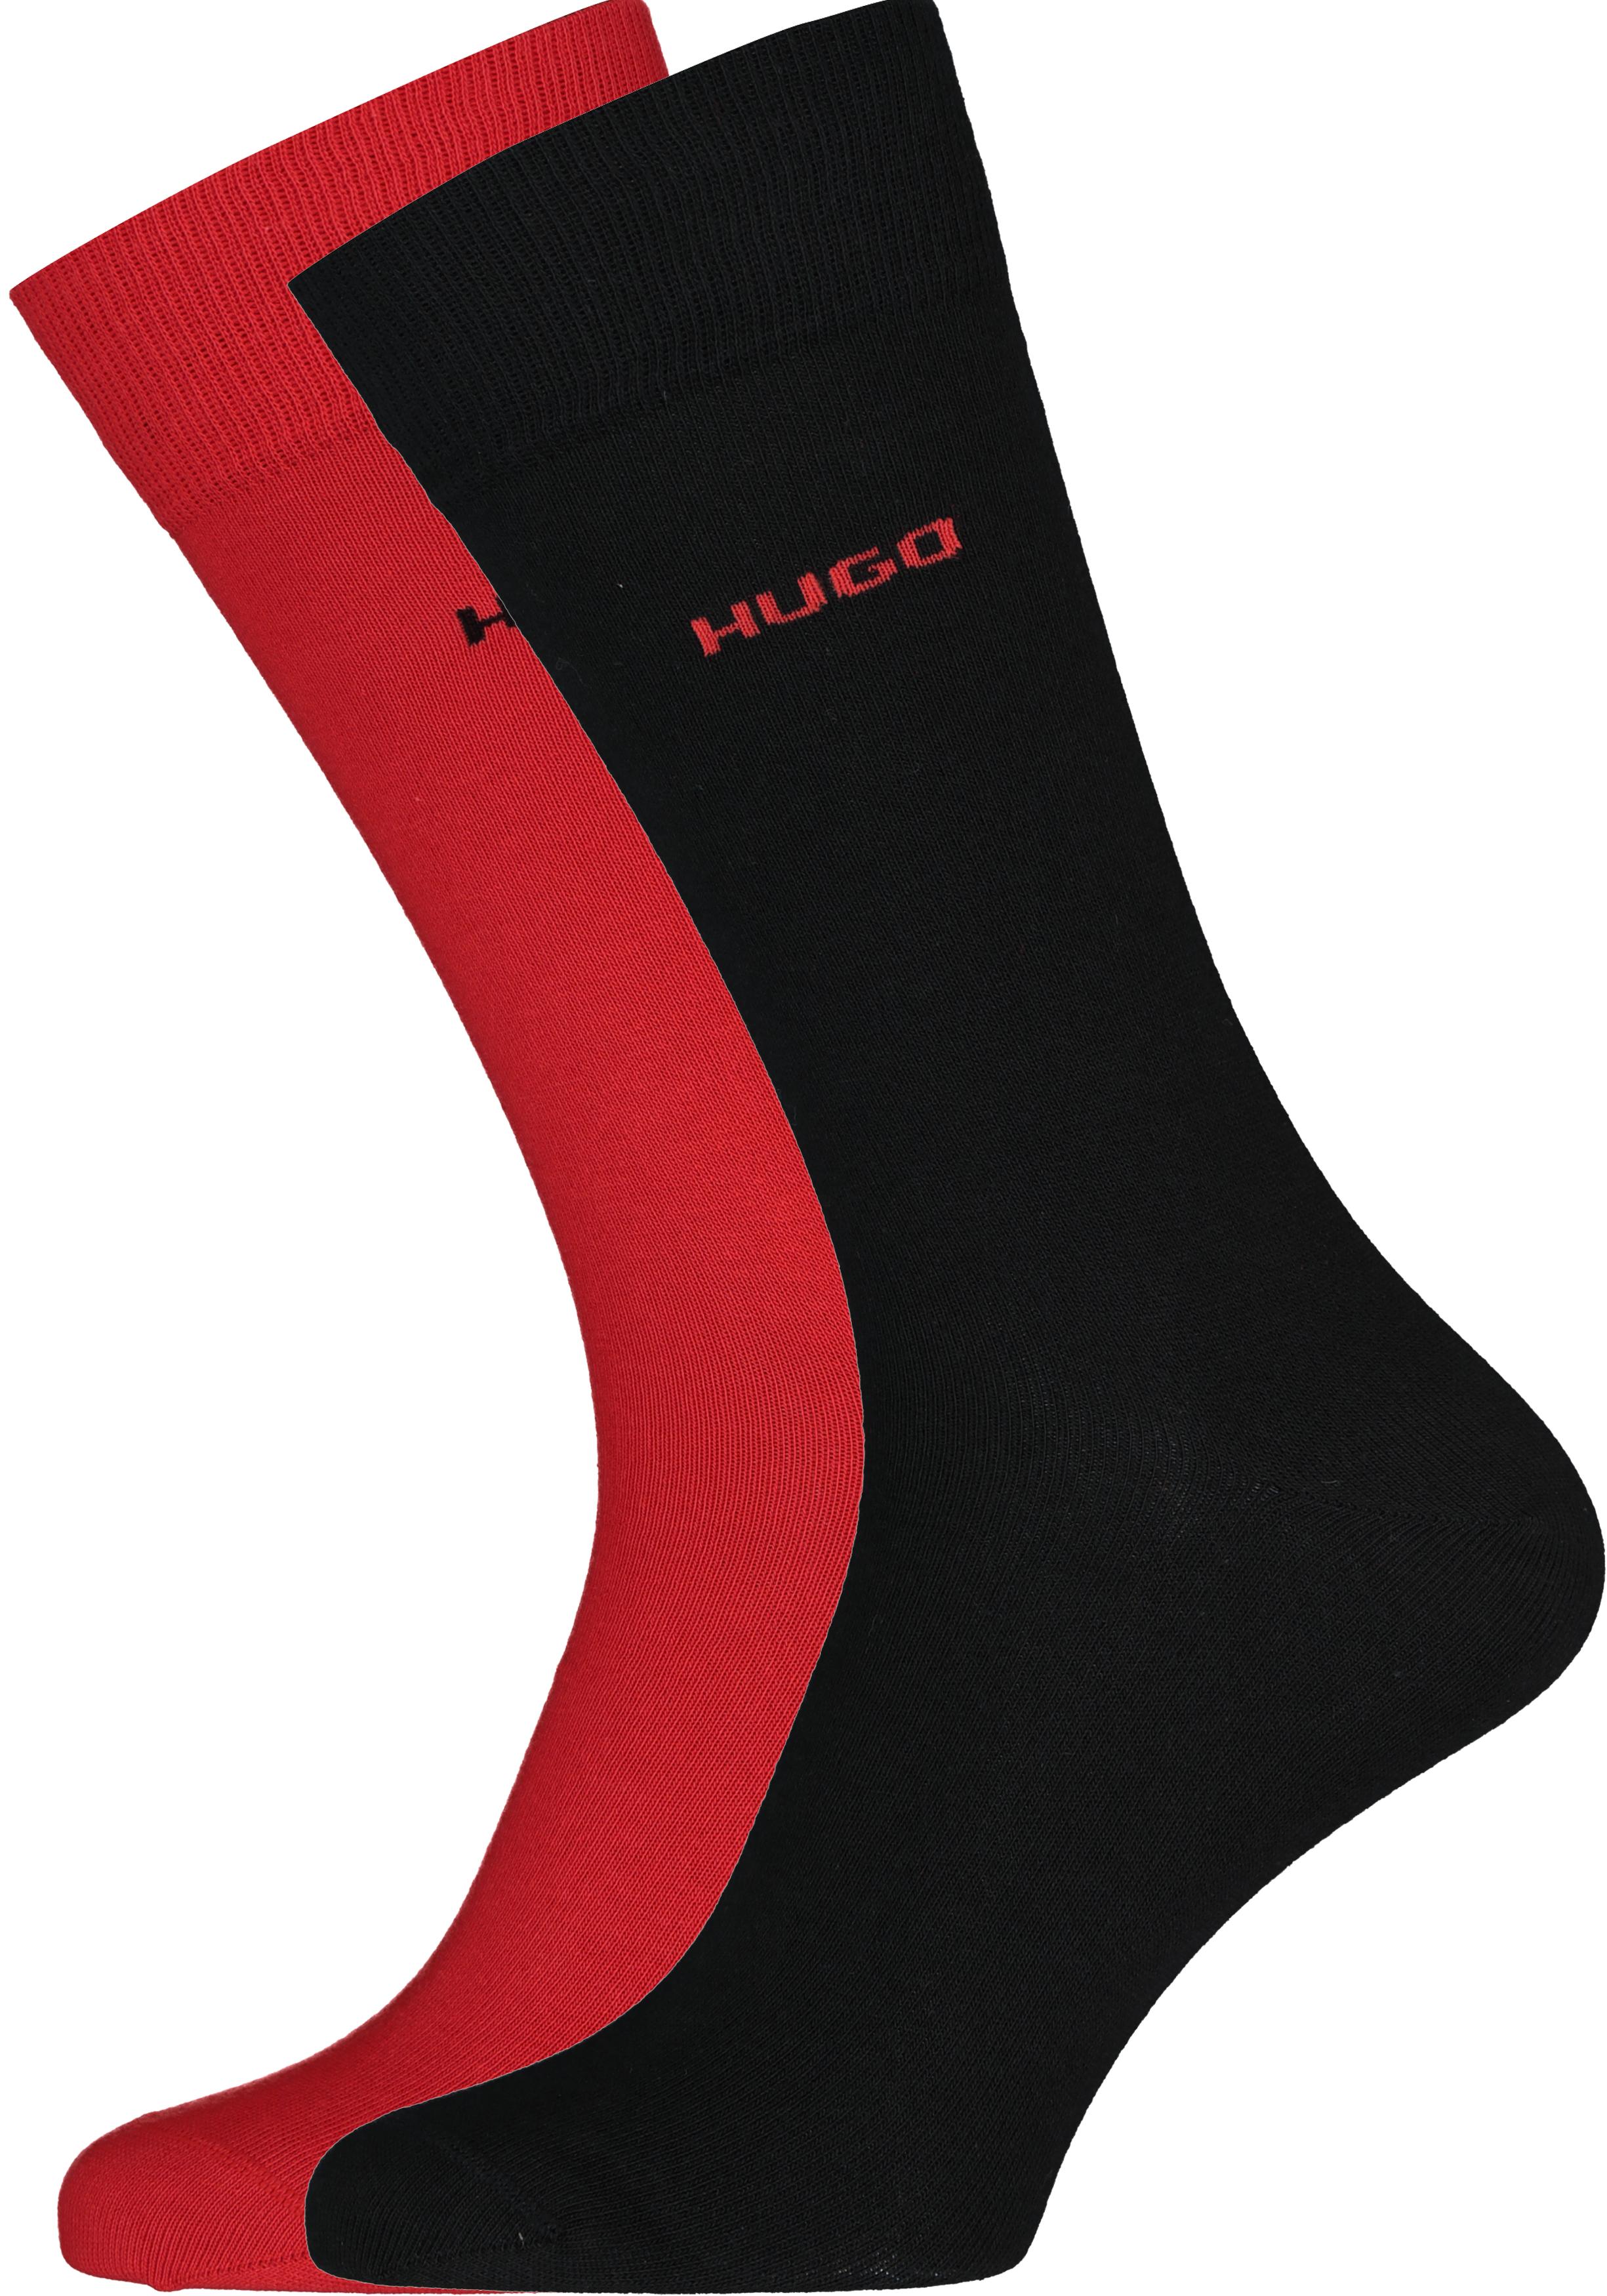 Plateau bon Ochtend gymnastiek HUGO logo sokken (2-pack), herensokken katoen, zwart en rood - Zomer SALE  tot 50% korting